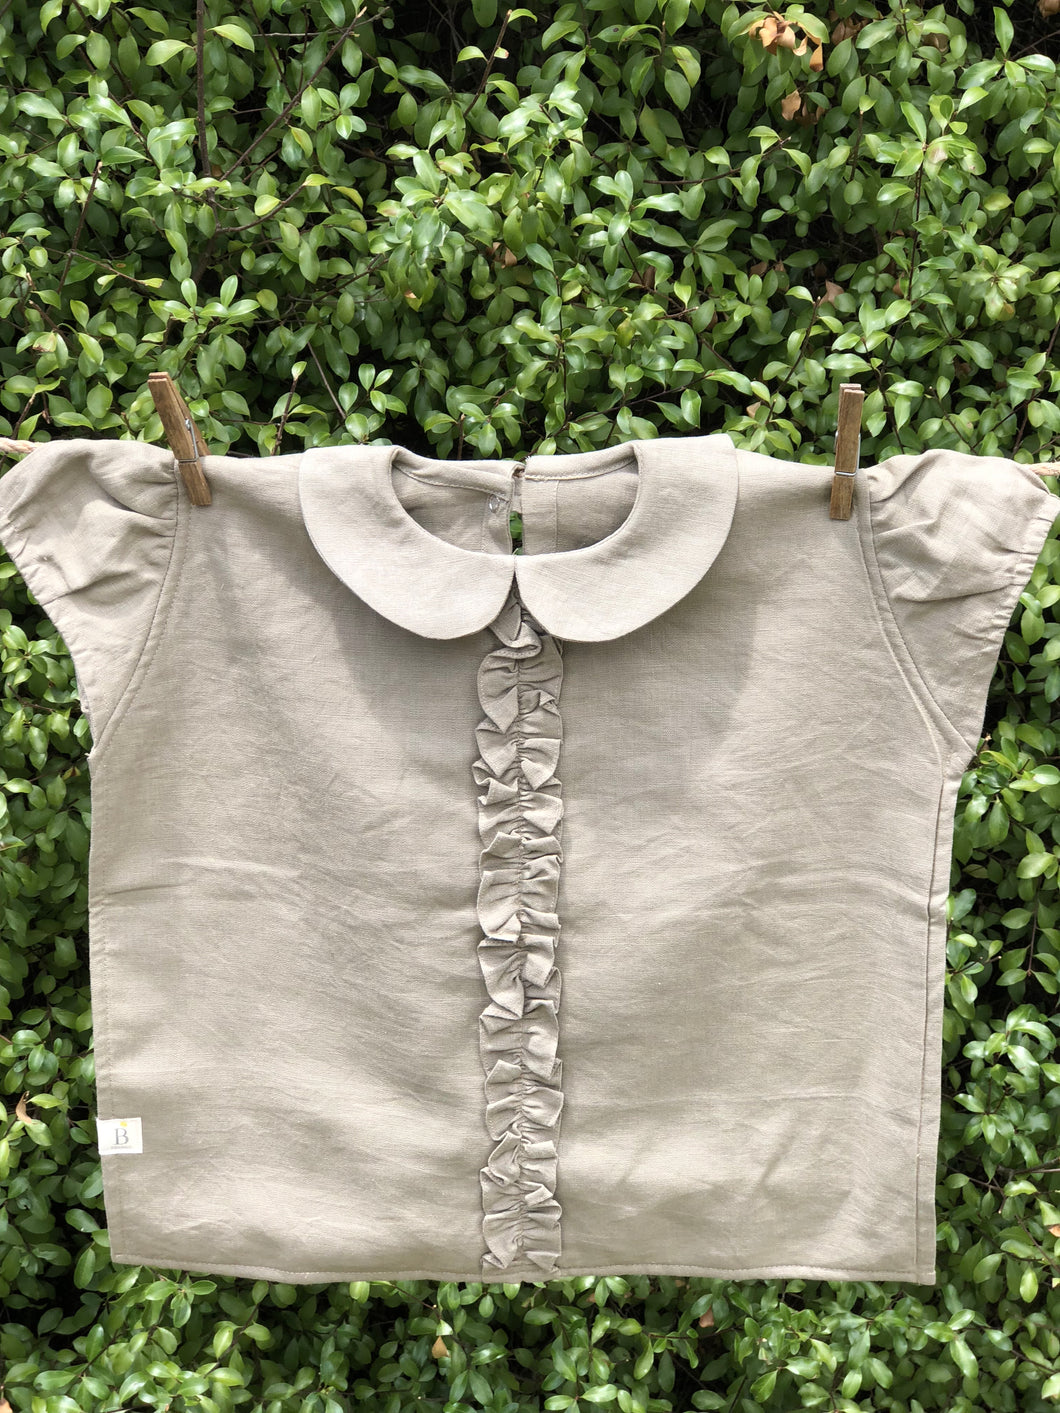 Linen Shirt Bib - with Frill